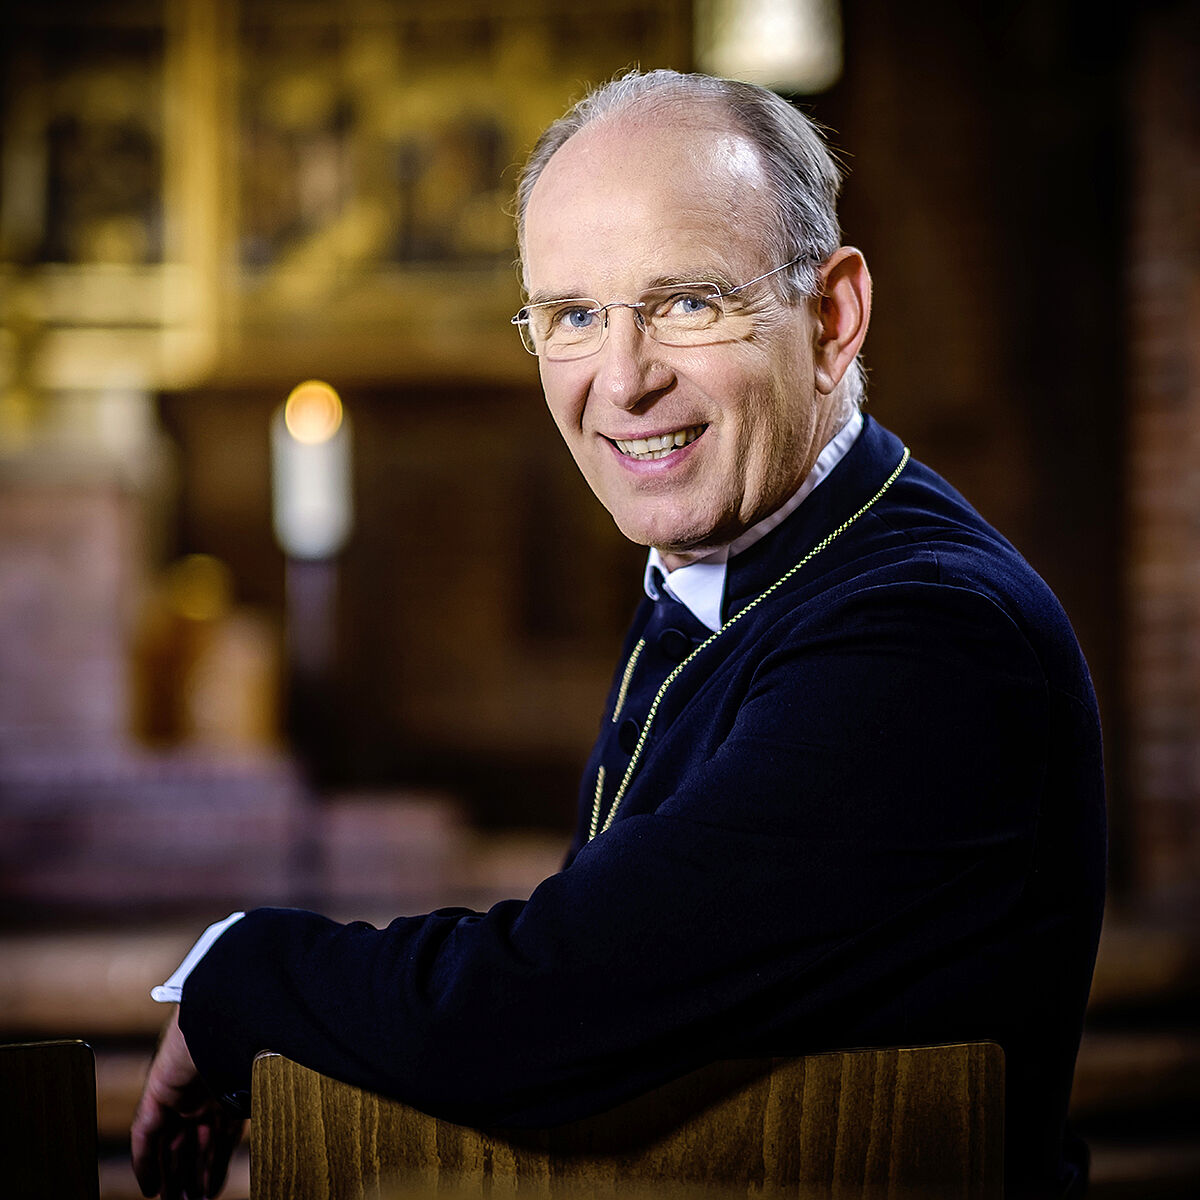 Bild von Landesbischof Ralf Meister; Foto: Heiko Preller